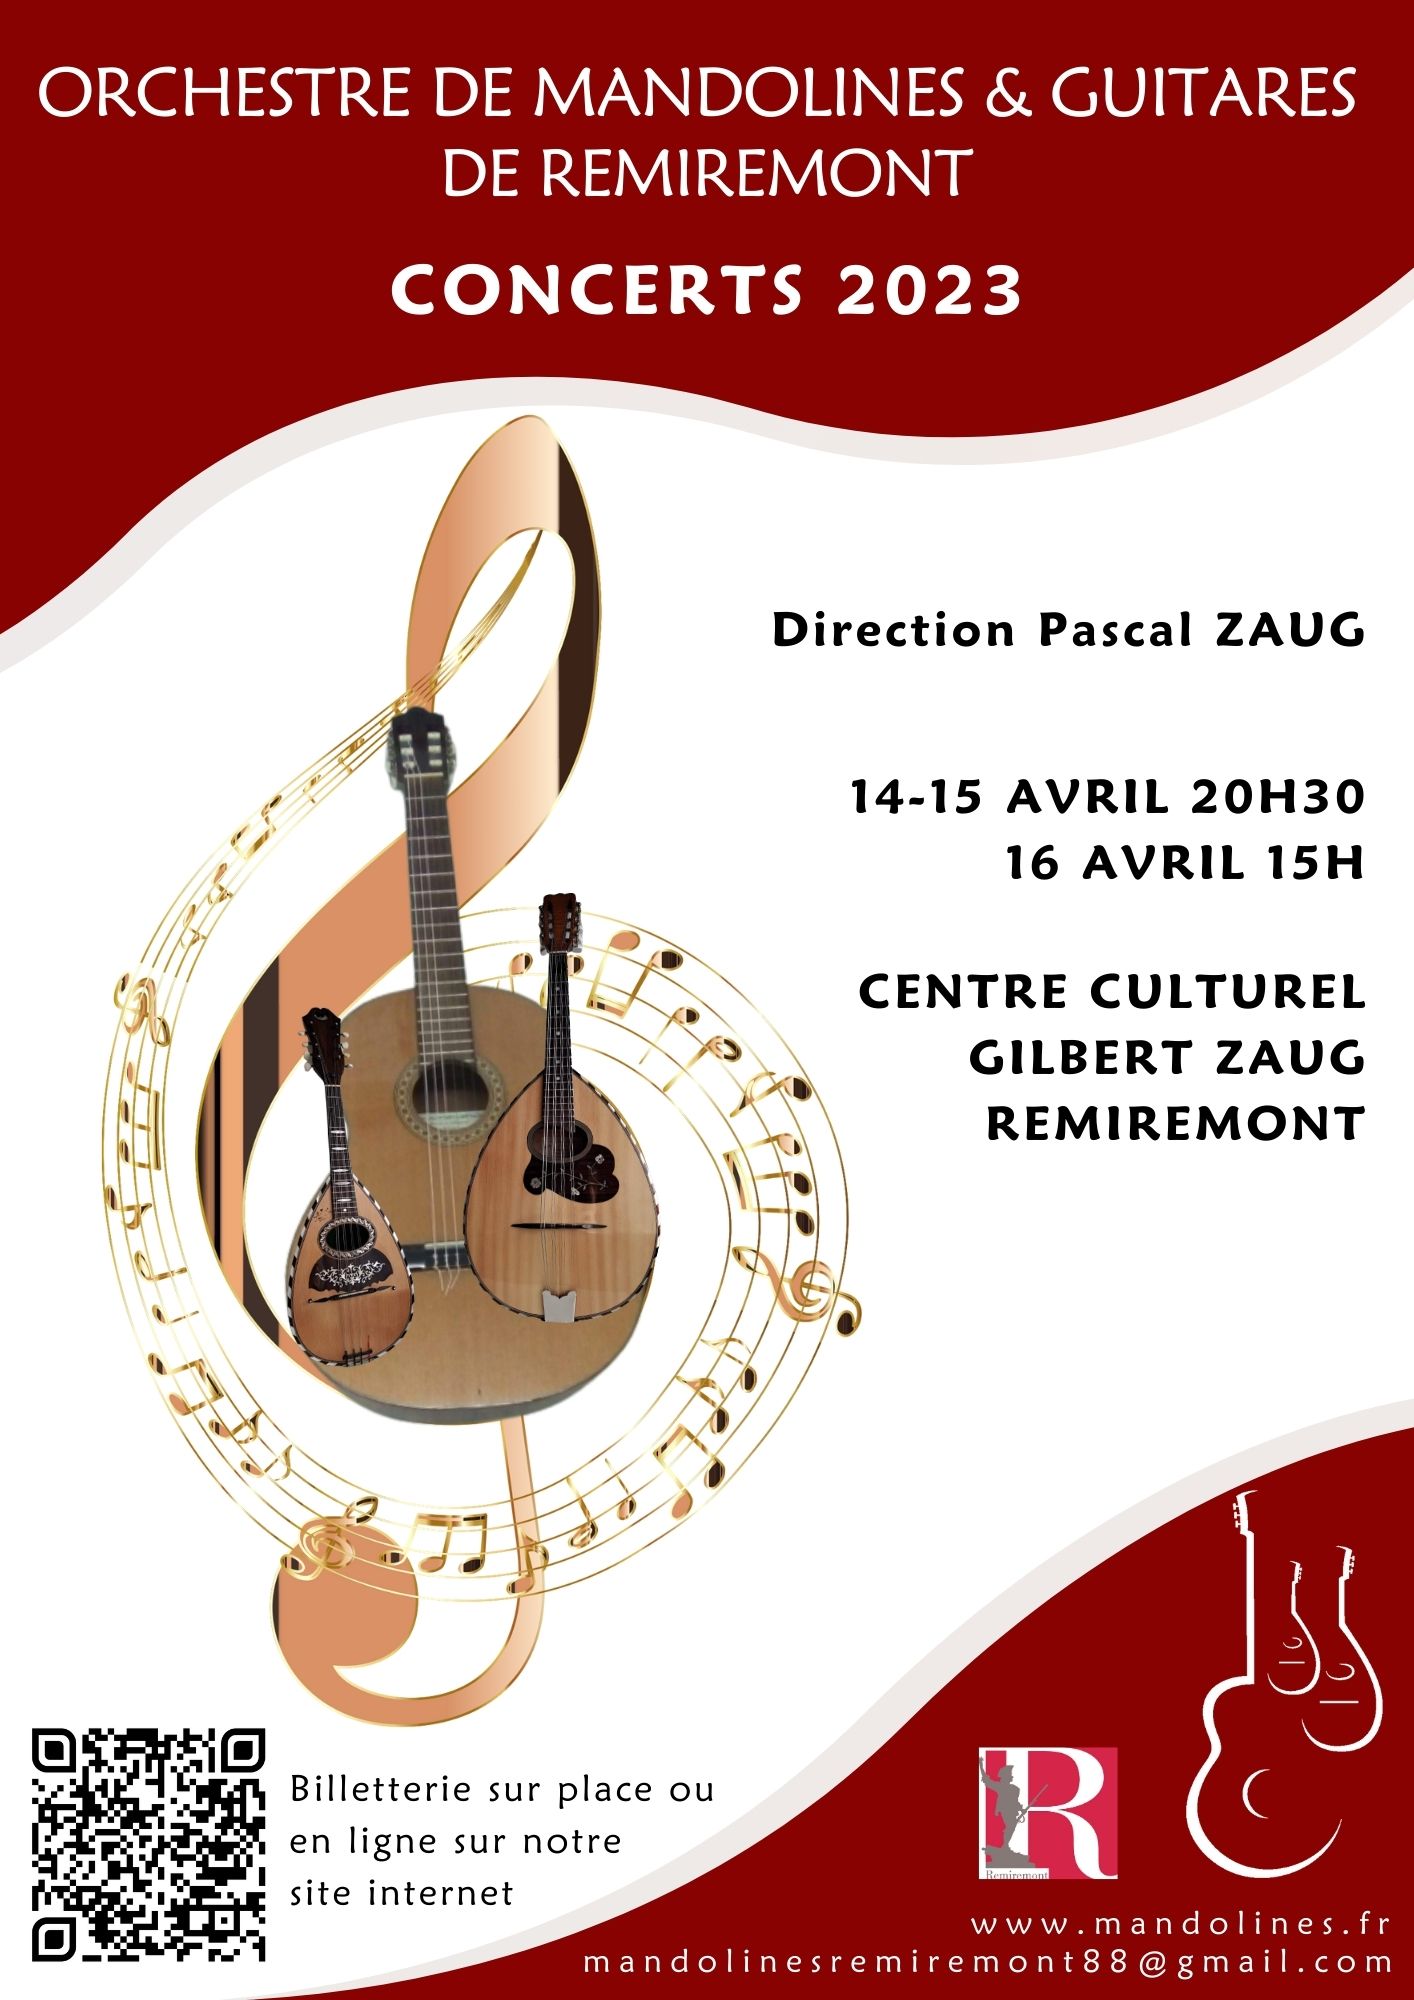 Concerts annuels 2023 de l'Orchestre de Mandolines et Guitares de Remiremont